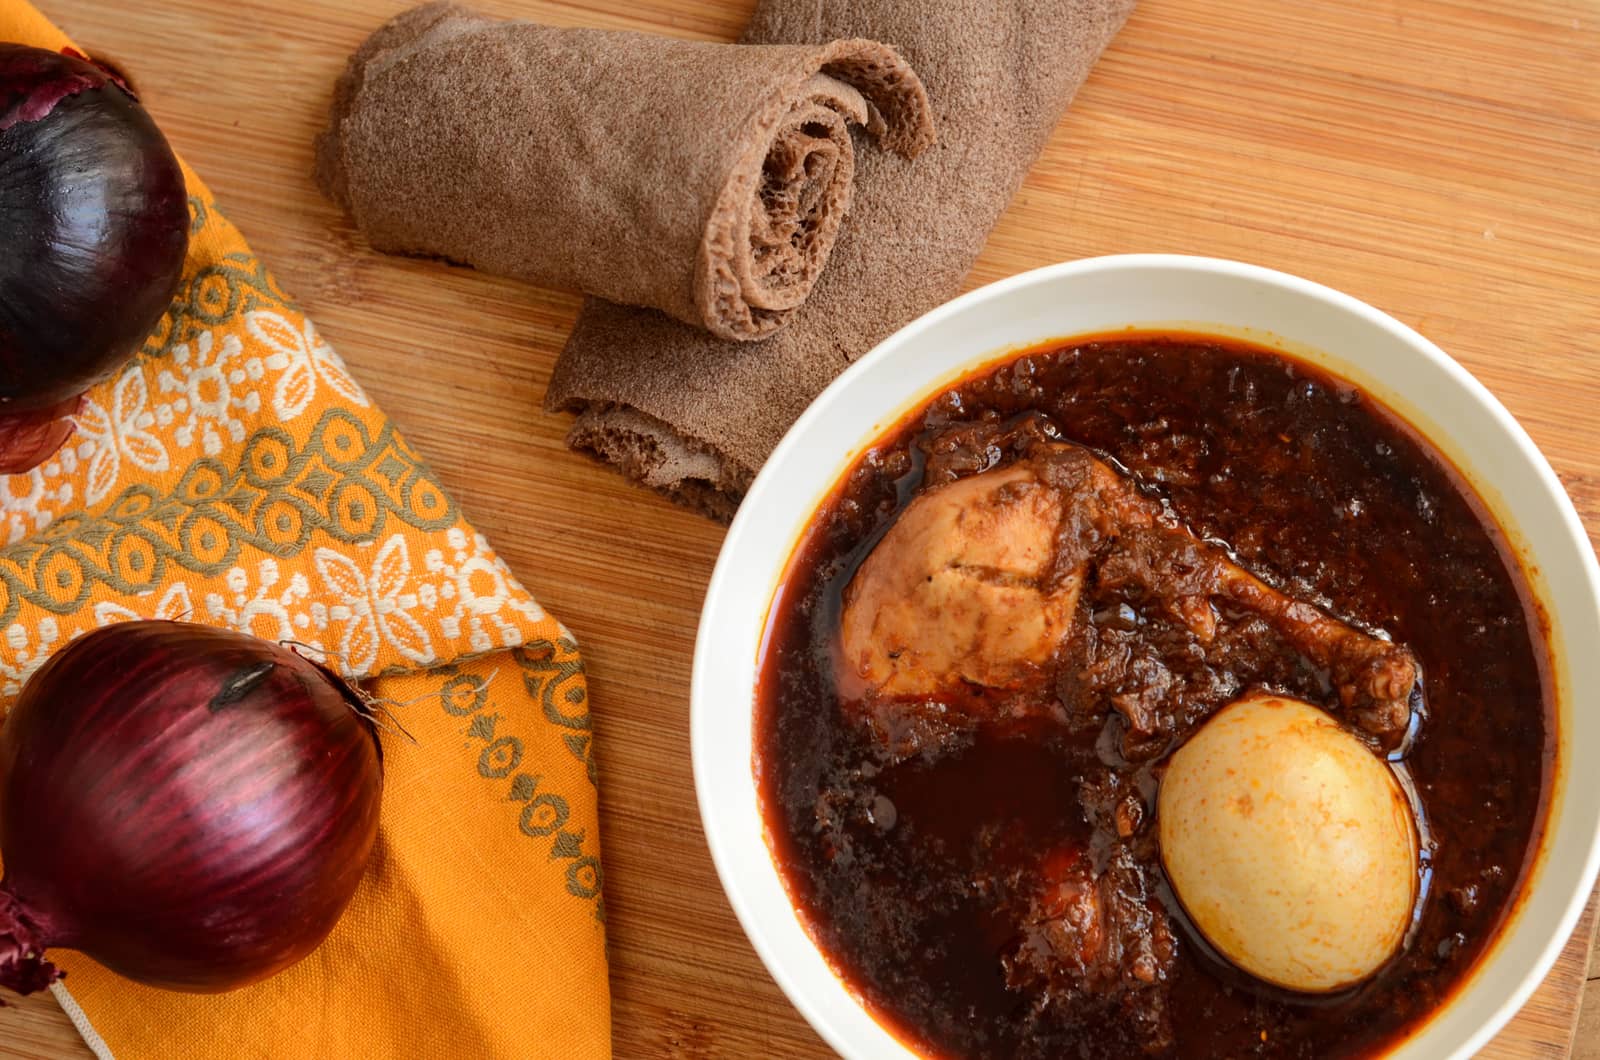 Doro wat - Ragout d'oignons et poulet épicé, plat national de l'Ethiopie  (recette authentique)